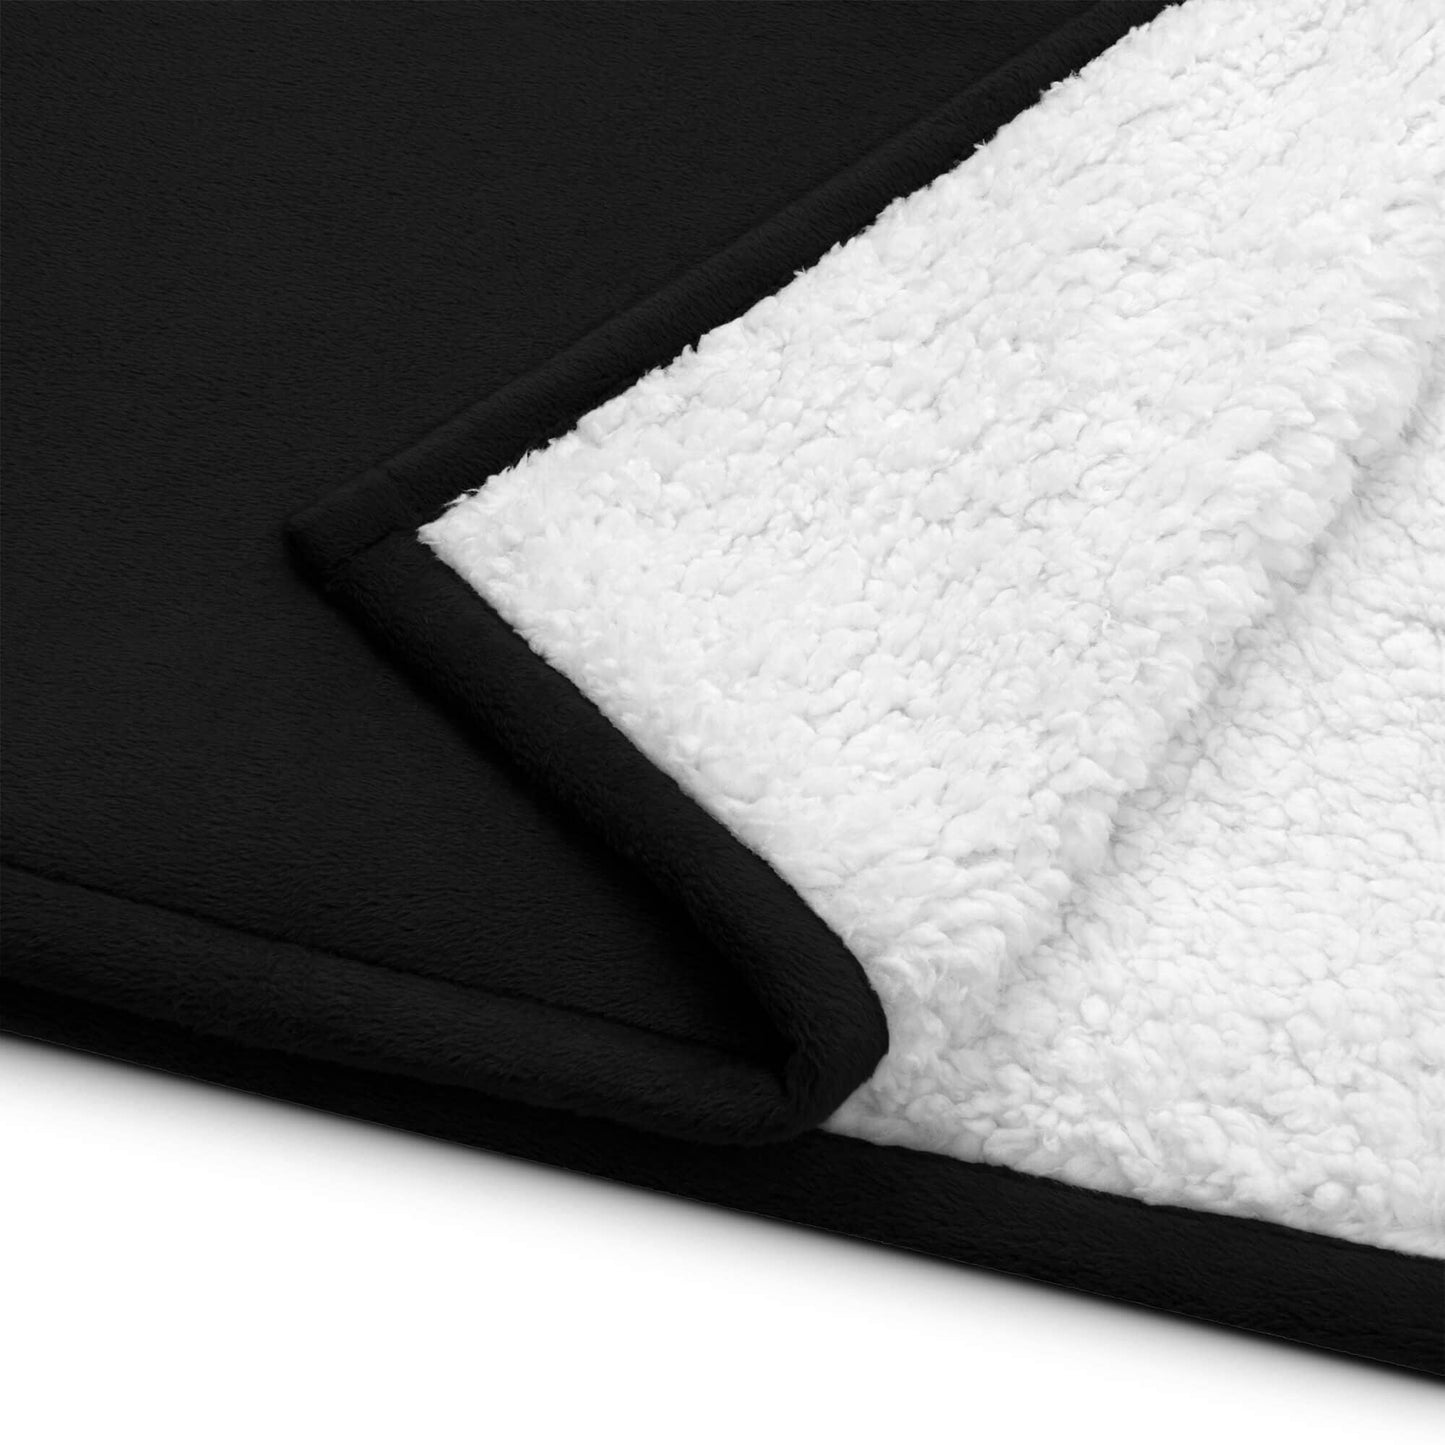 Plurthlings Premium Sherpa Blanket PLURTHLINGS 